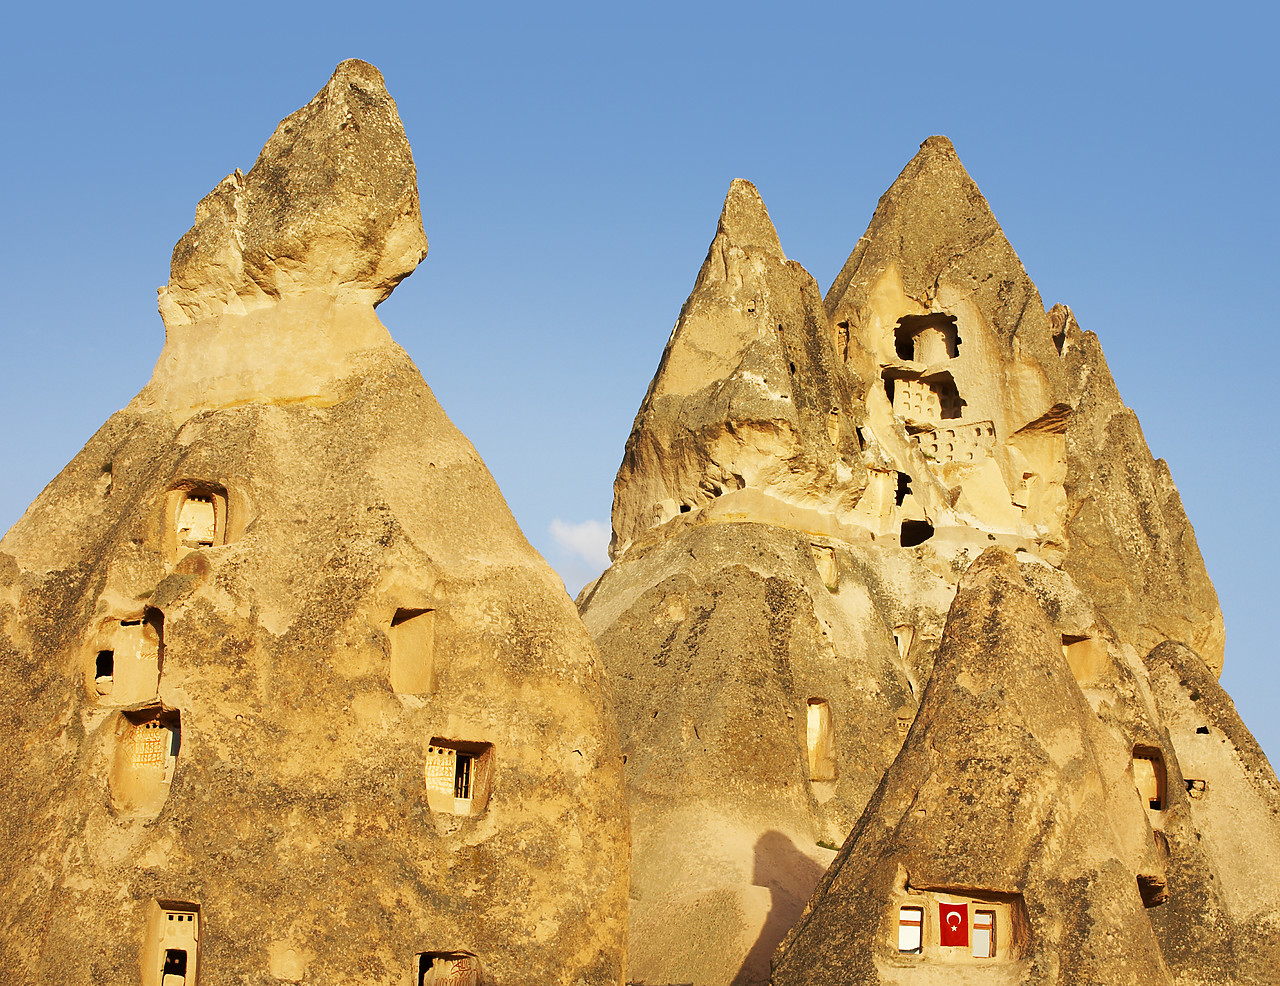 #070226-1 - Stone Houses, Uchisar, Cappadocia, Turkey